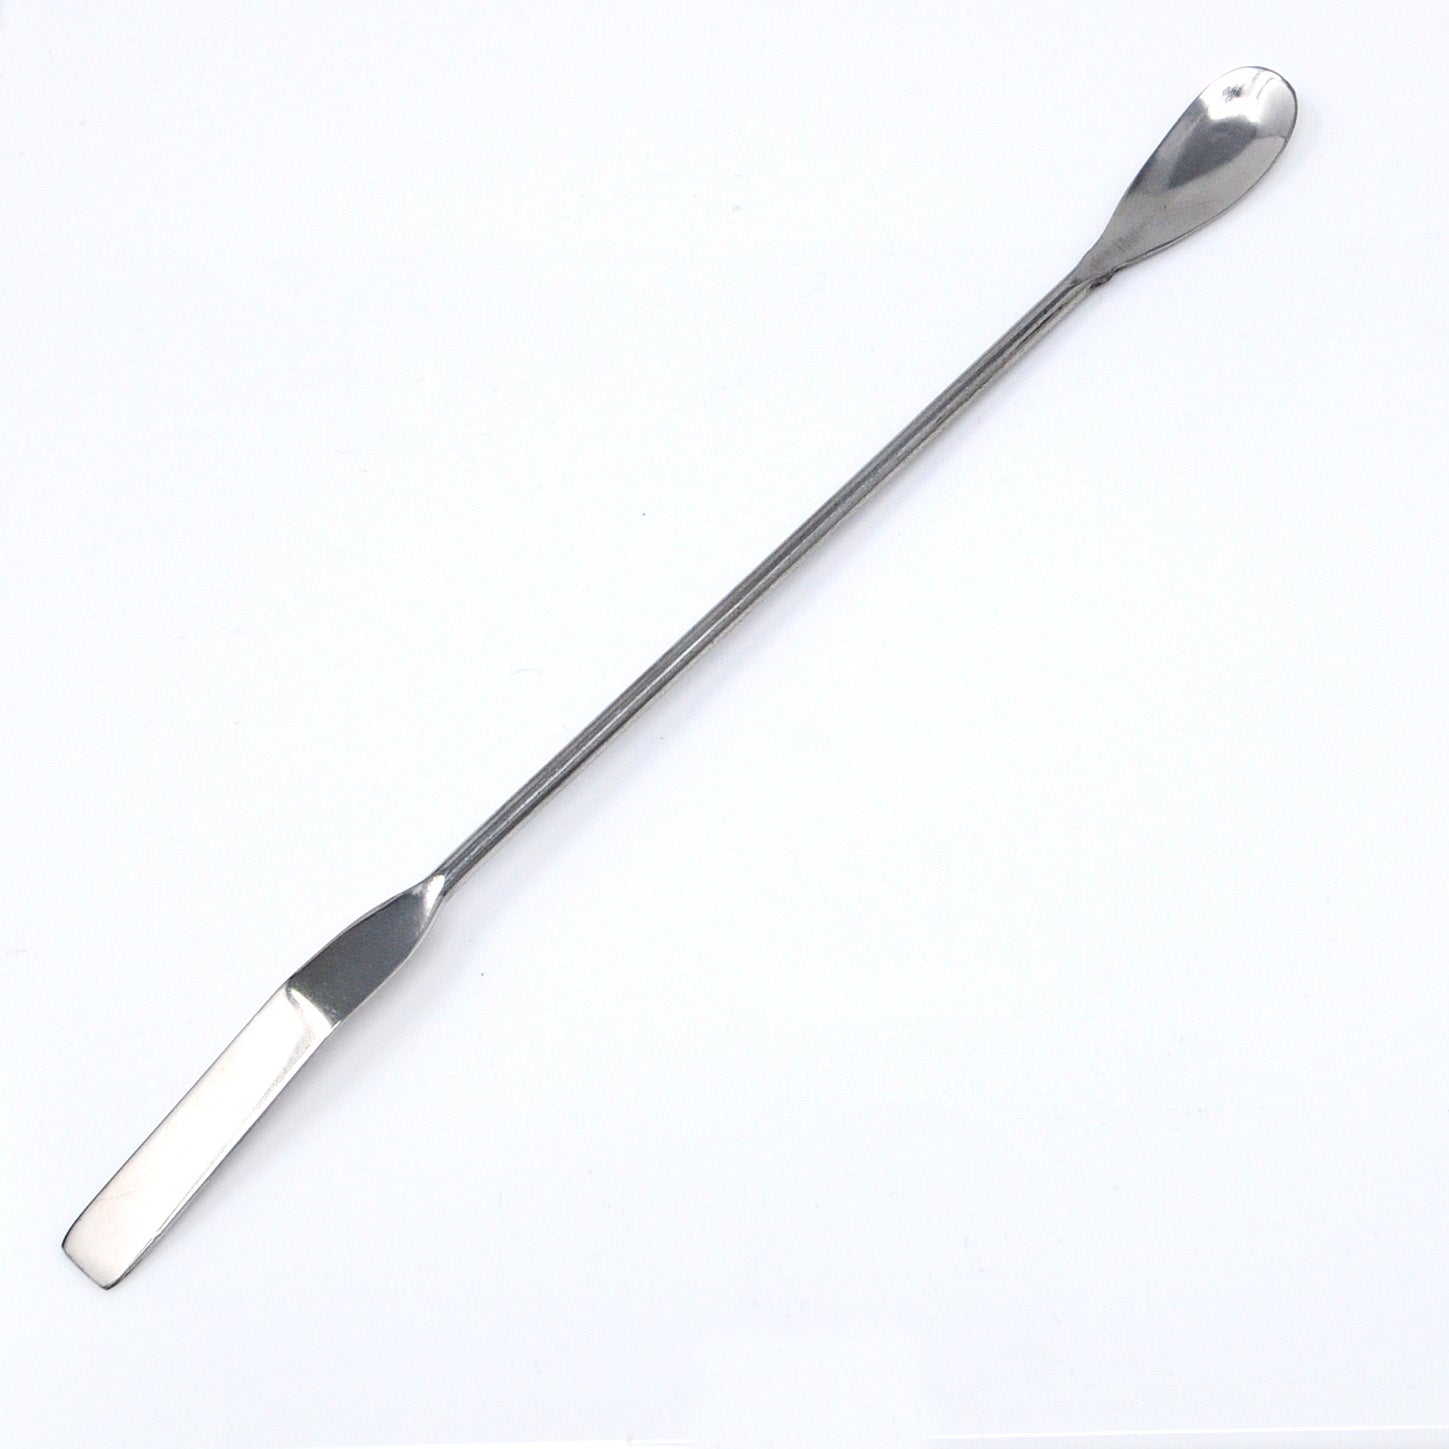 spatula in the laboratory